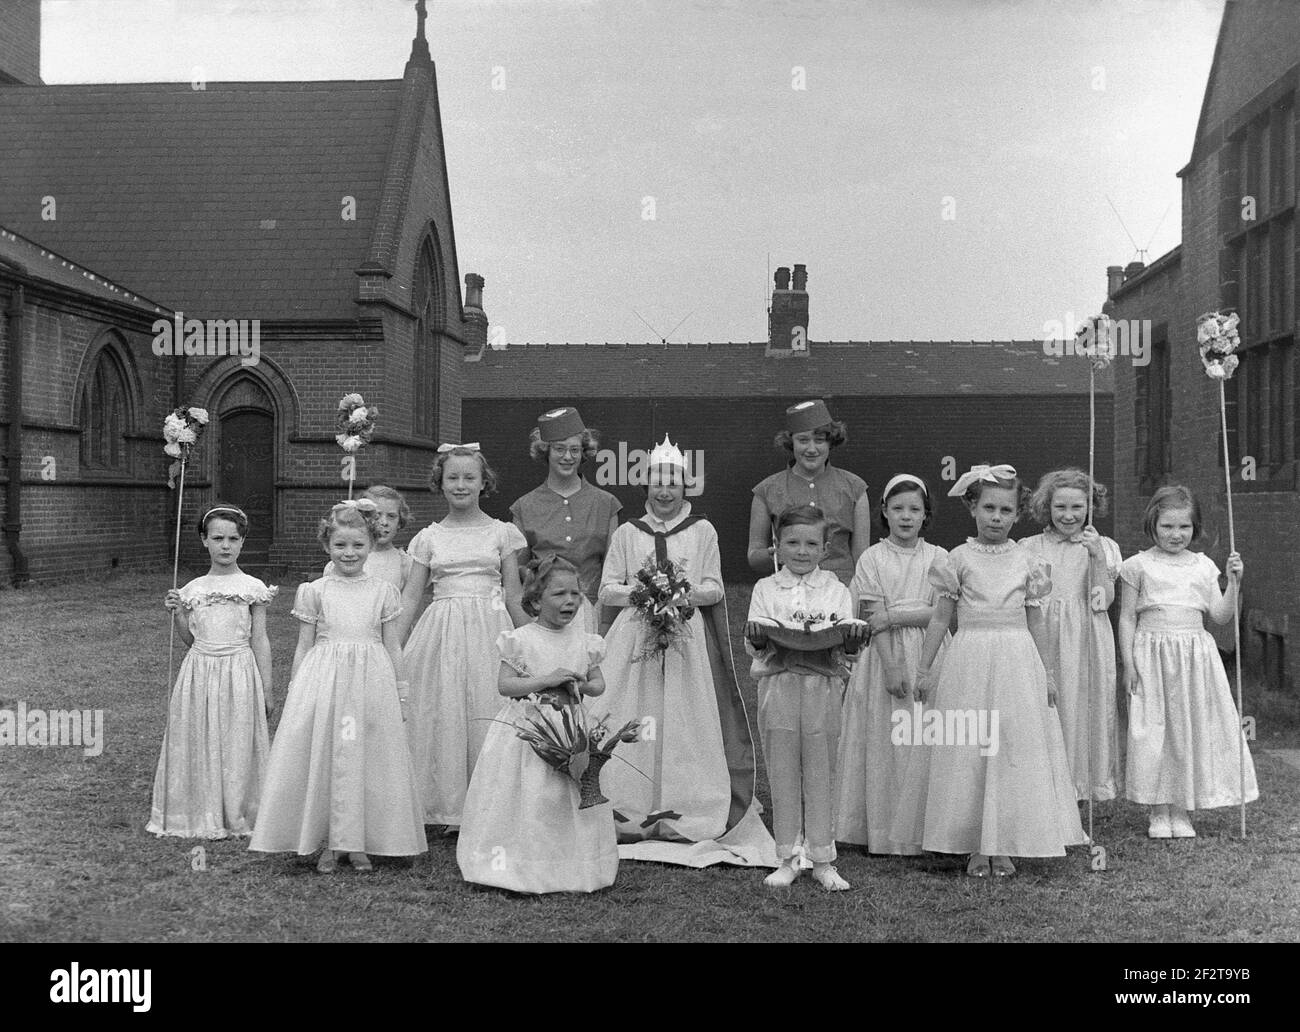 1956, historique, dans les jardins de leur église locale, un groupe d'enfants dans leurs jolis grenouille ou robes, de la ligne pour une photo avant le traditionnel défilé ou carnaval de mai, Leeds, Angleterre, Royaume-Uni. La Reine de mai se tient au milieu du groupe, avec un petit garçon tenant un coussin, qui tenait sa couronne. Plusieurs des filles tiennent des bâtons de fleur. Les célébrations du jour de mai sont un festival traditionnel, marquant le début de l'été, datant de l'époque romaine, et le festival de la flore. Banque D'Images